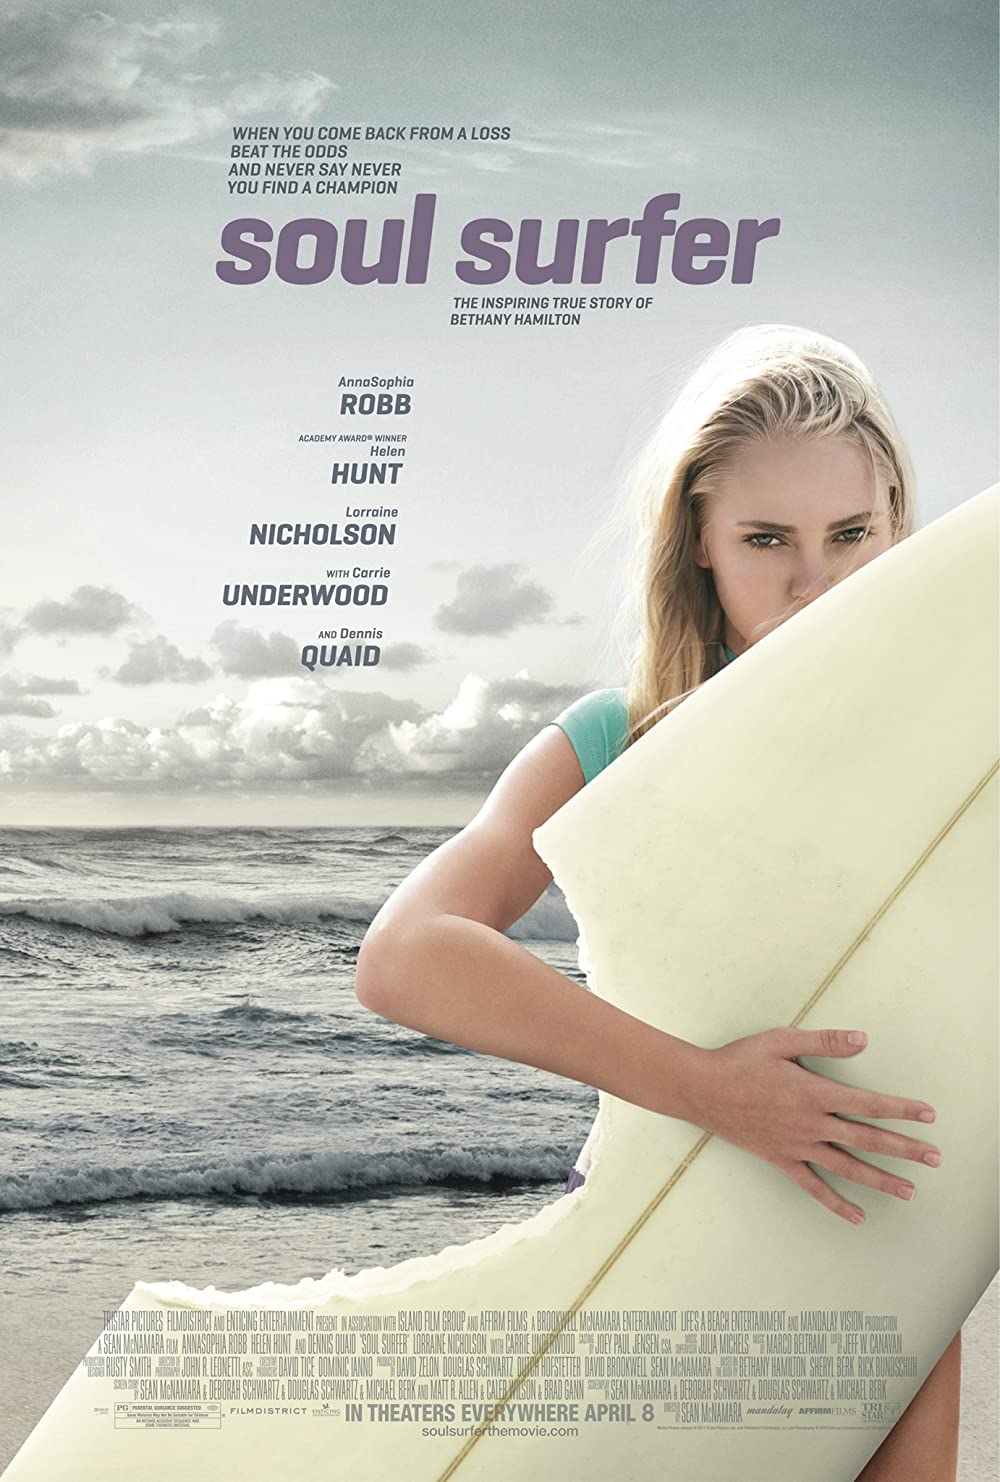 ดูหนังออนไลน์ฟรี Soul Surfer โซล เซิร์ฟเฟอร์ หัวใจกระแทกคลื่น